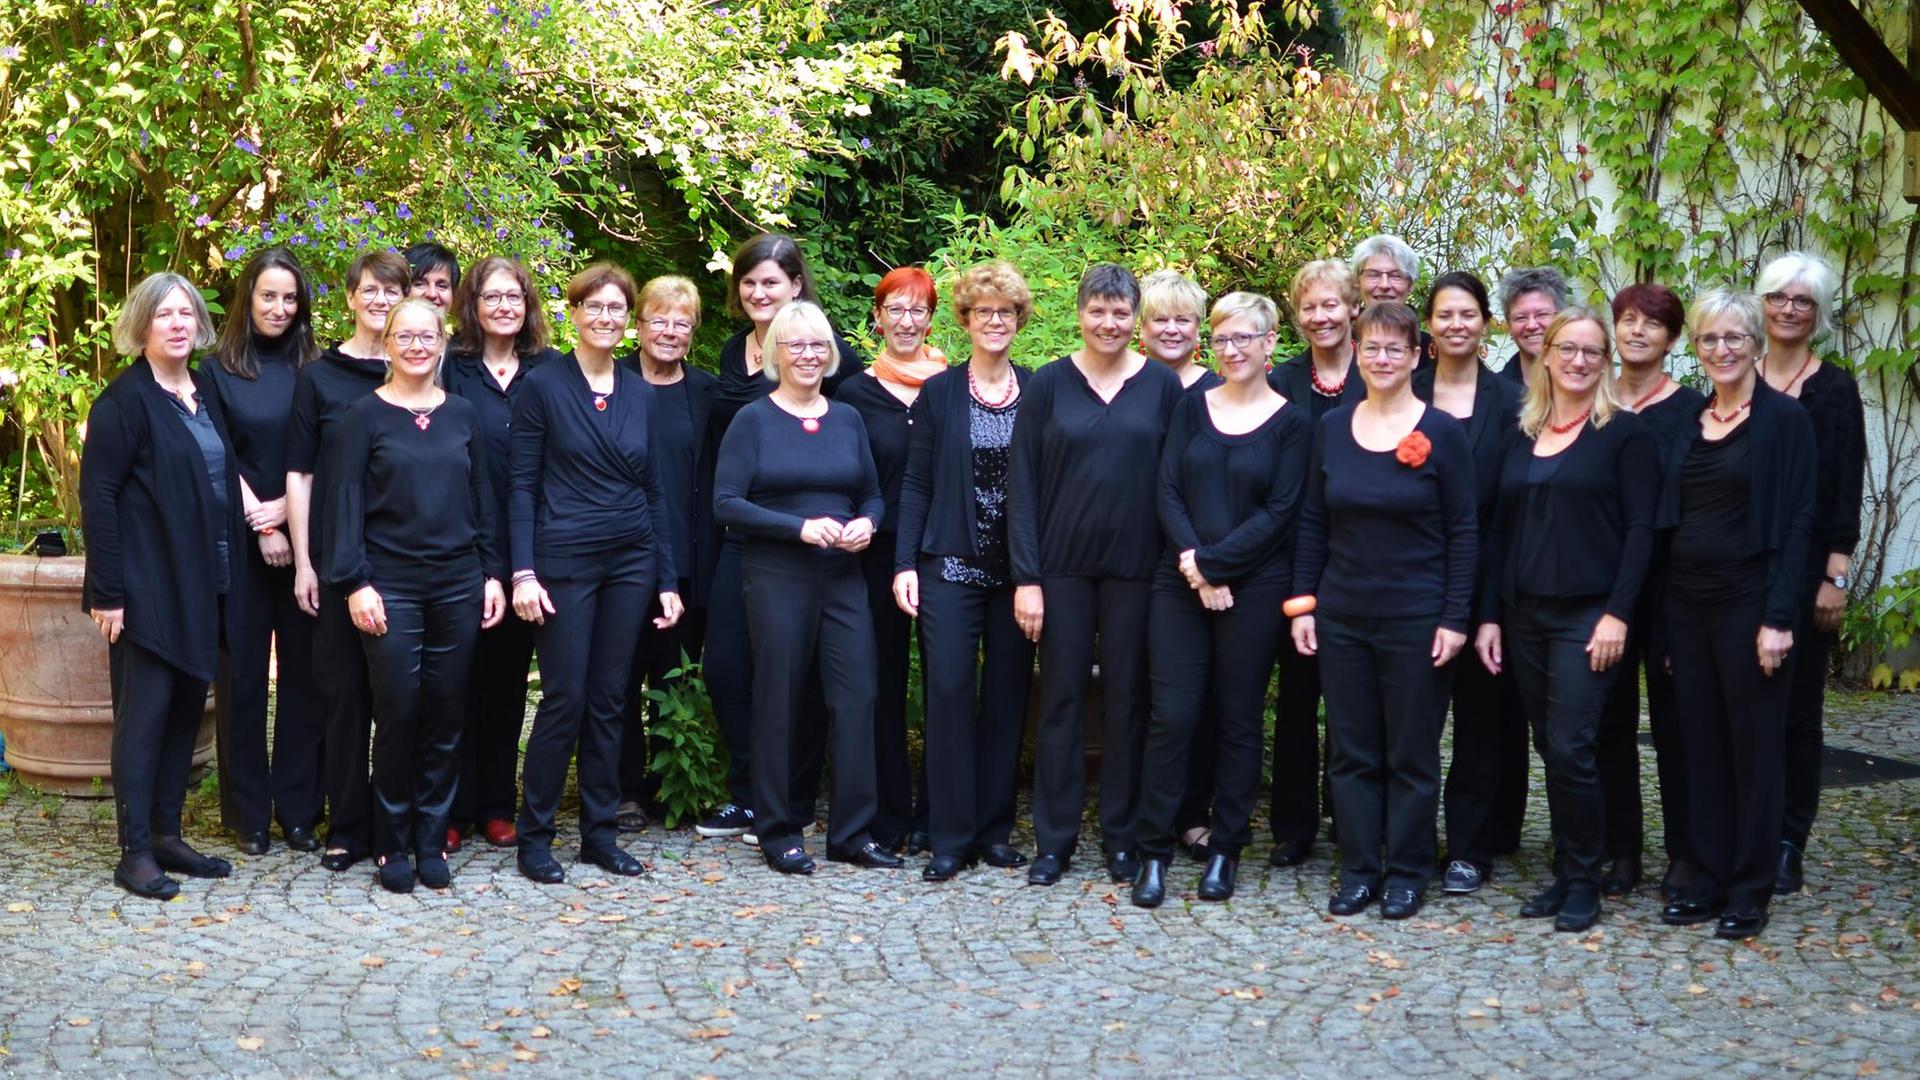 Gruppenbild des Chores in schwarzer Kleidung